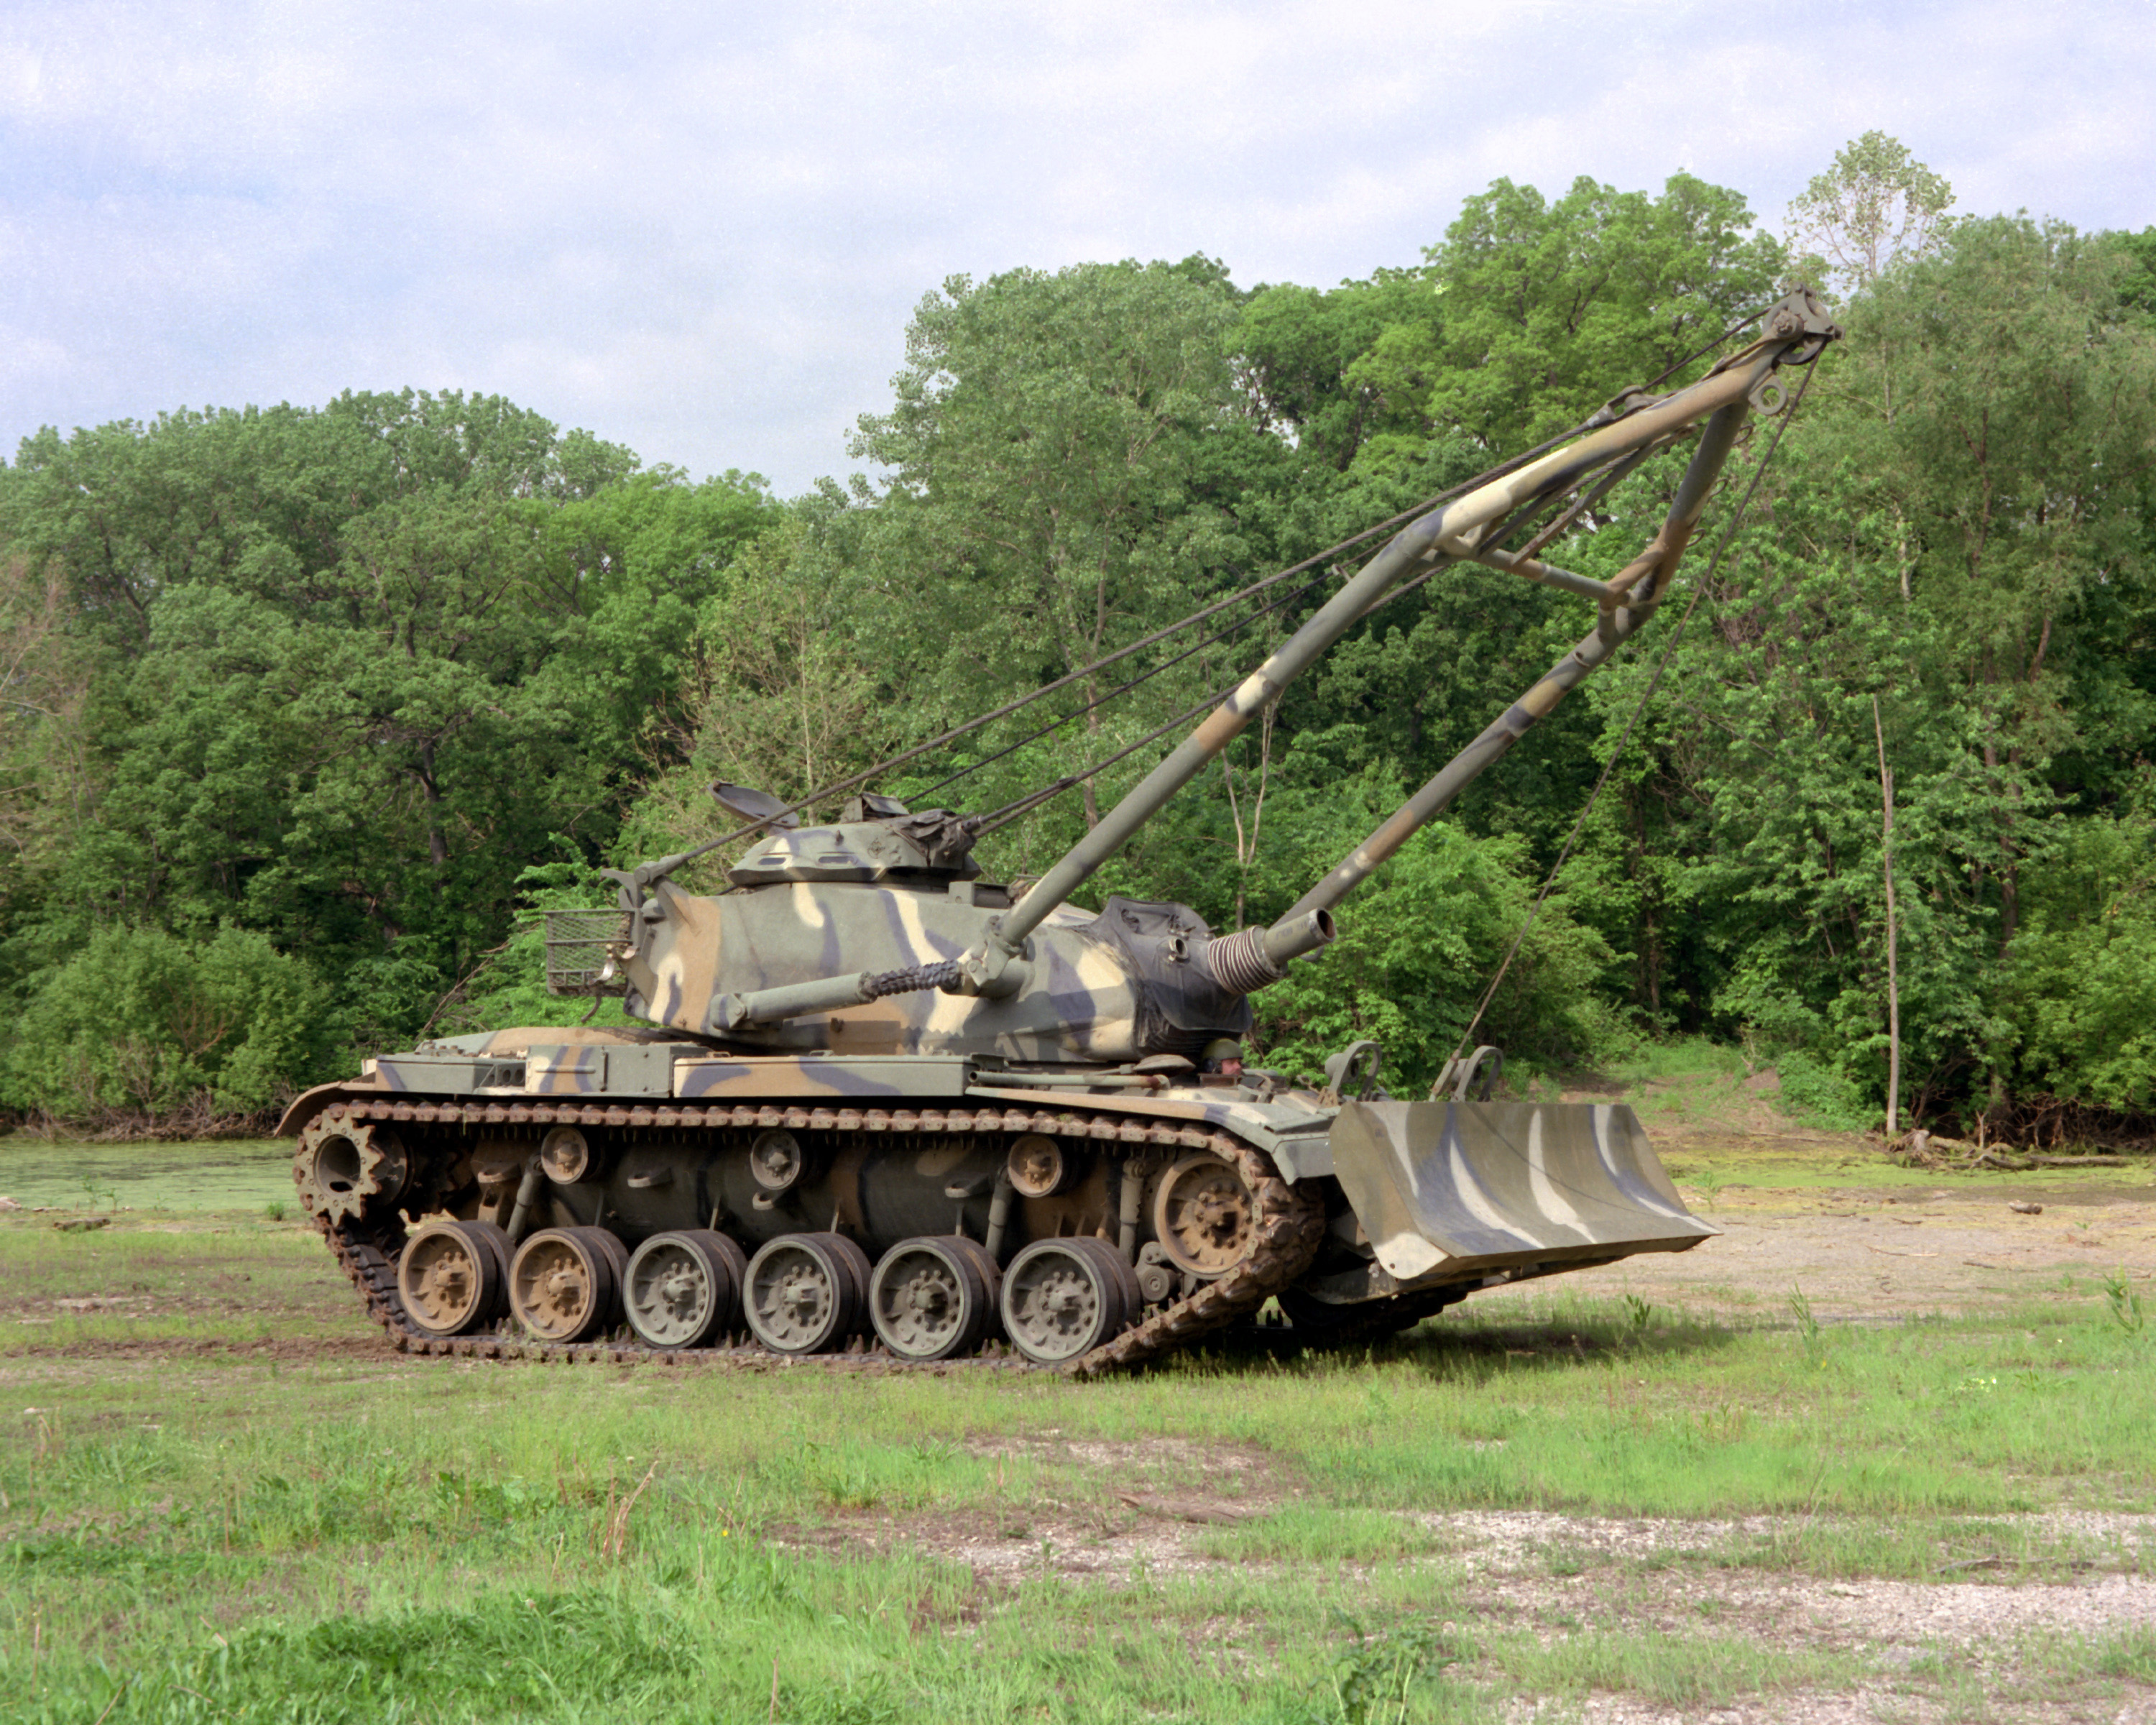 عائلة الدبابه M60 الامريكيه العريقه  M728_Combat_Engineer_Vehicle_woodland_from_right